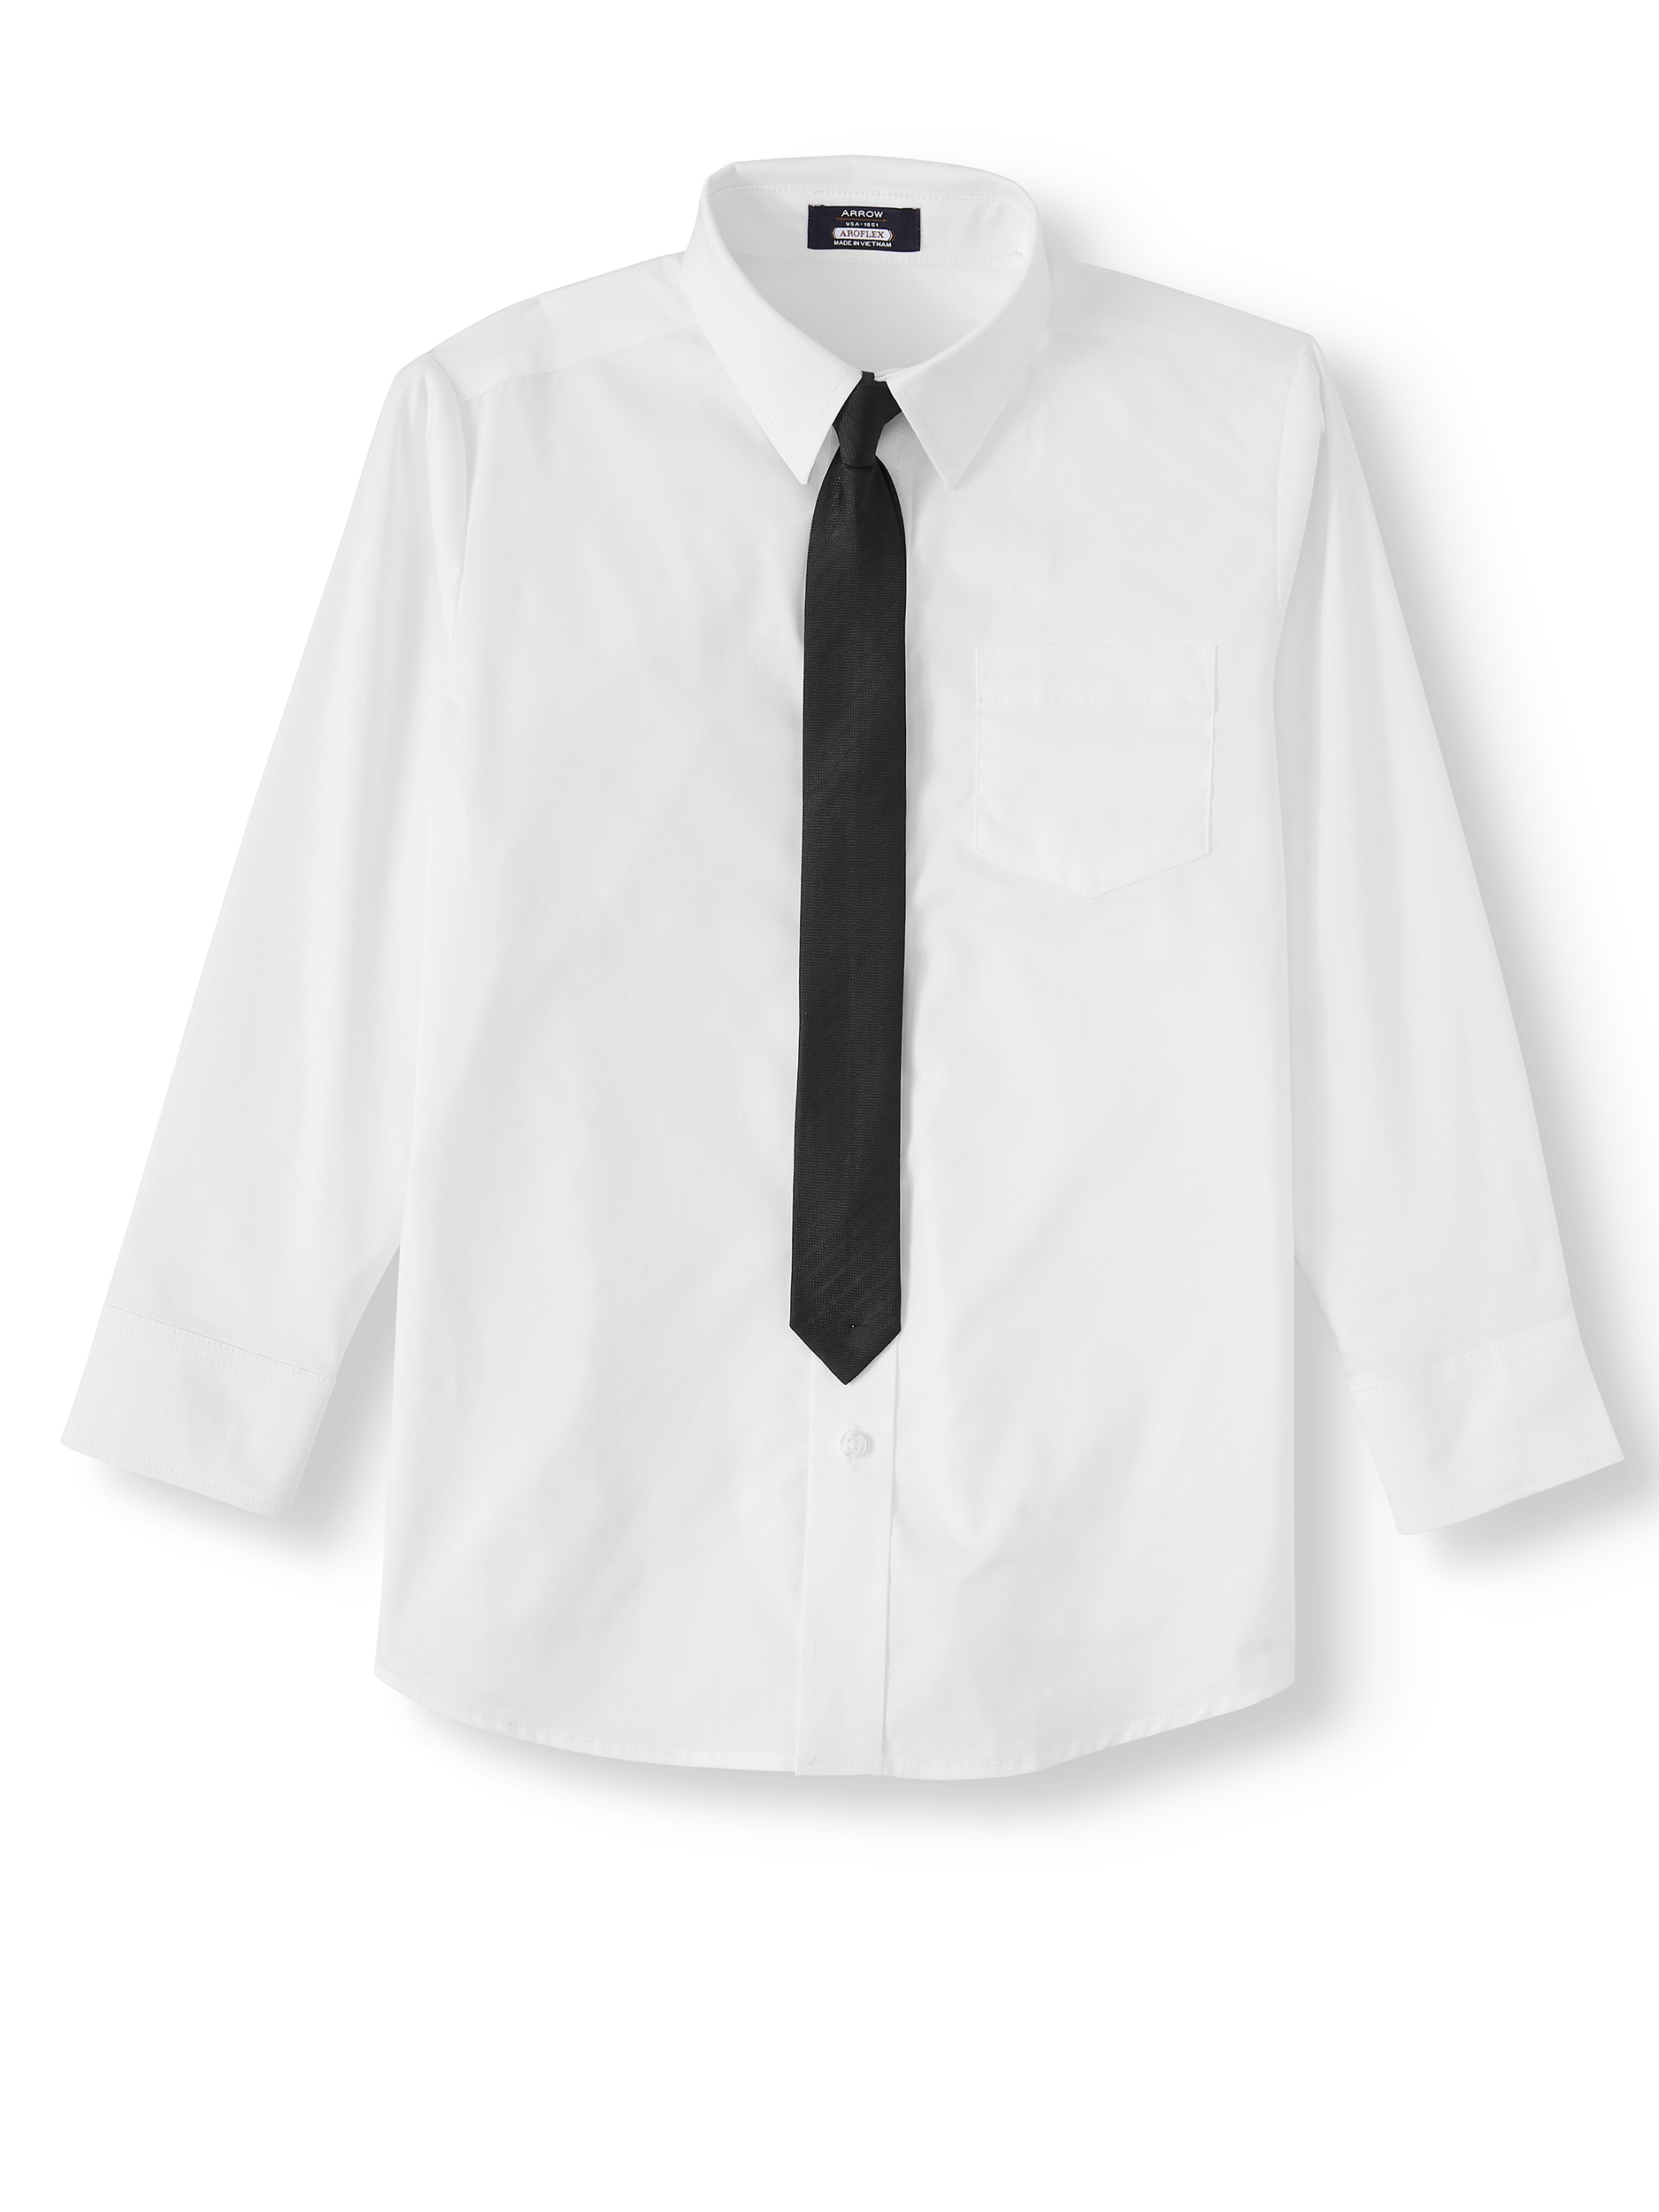 Arrow Aroflex Stretch Poplin Fashion Dress Shirt and Tie, 2 Piece Set, Sizes 4-18 - image 1 of 3